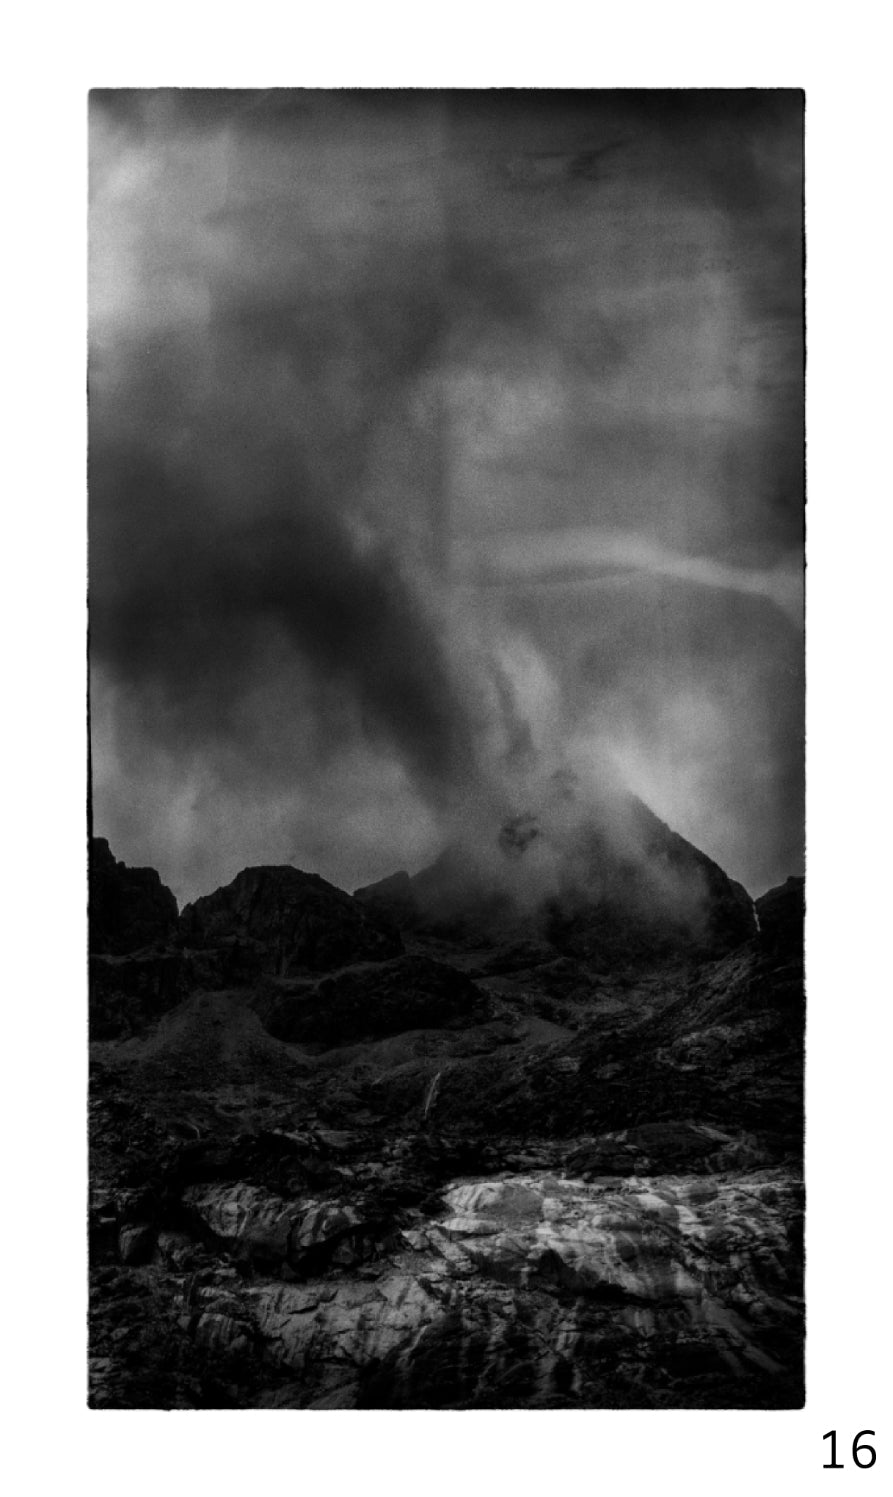 Guy Dickinson A Shadow Passes A2 print (SKYE_16) at Bard Scotland.